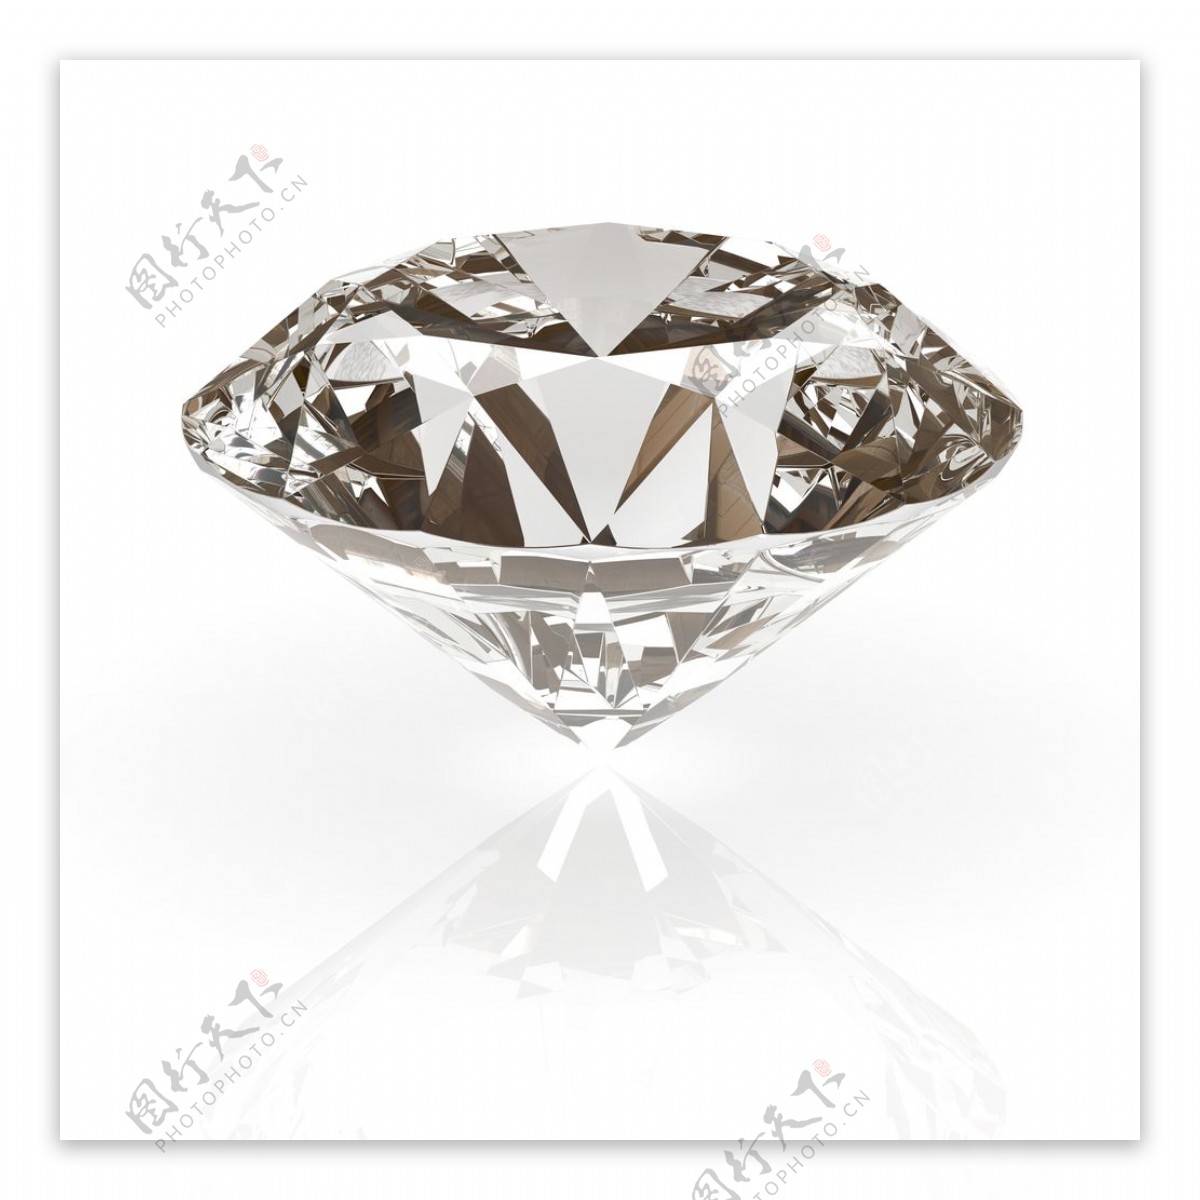 高光皙白钻石宝石首饰奢侈品高清图片素材钻石图片素材下载